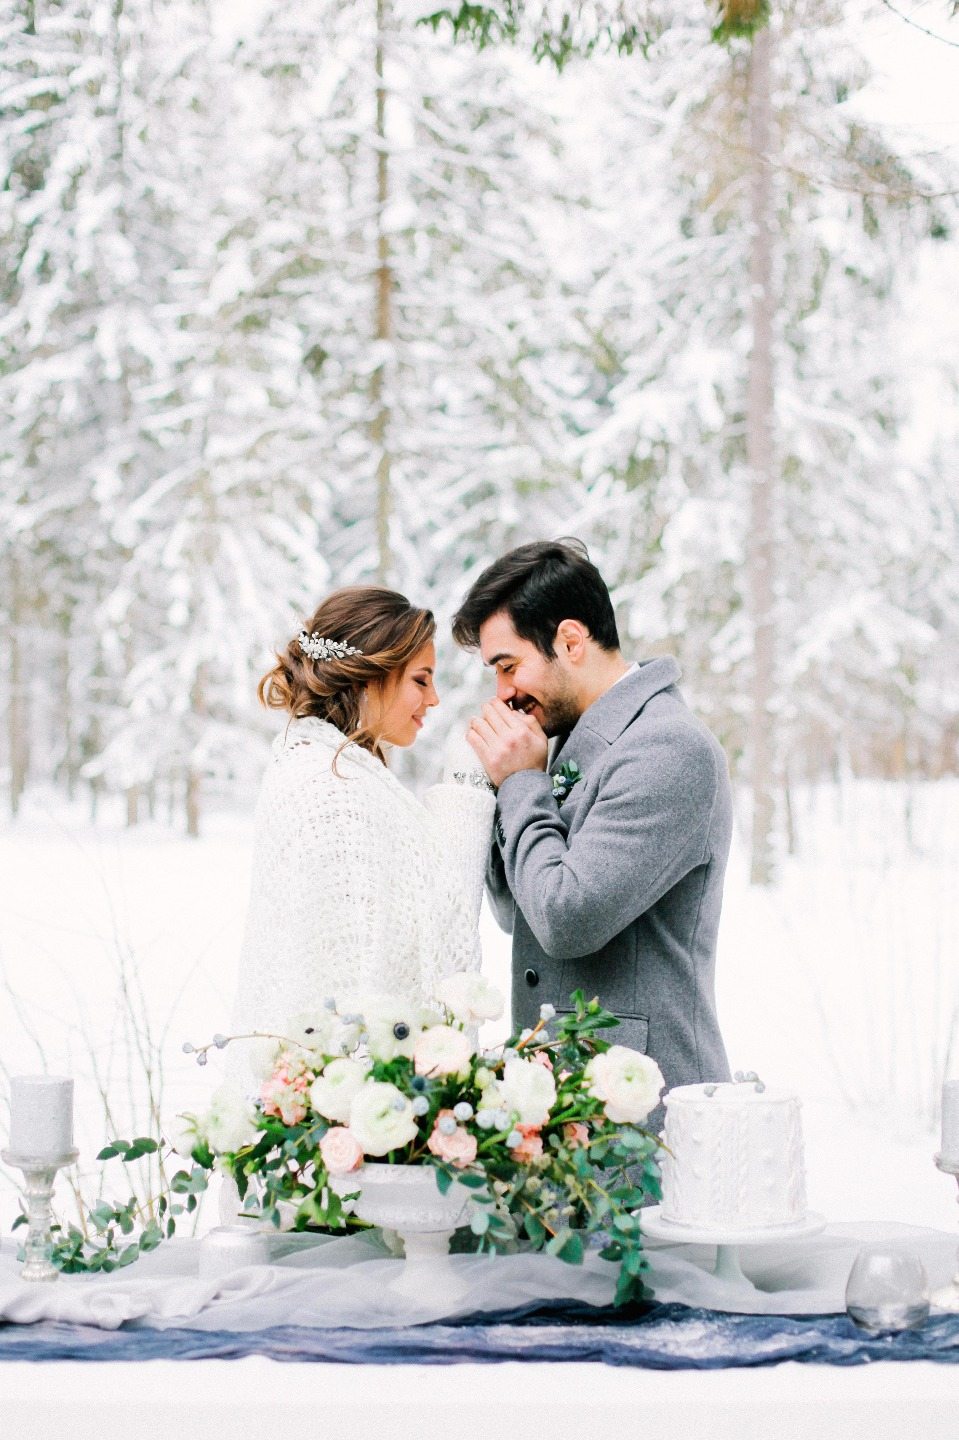 Свадьба зимой: идеи для фотосессии и необходимые аксессуары